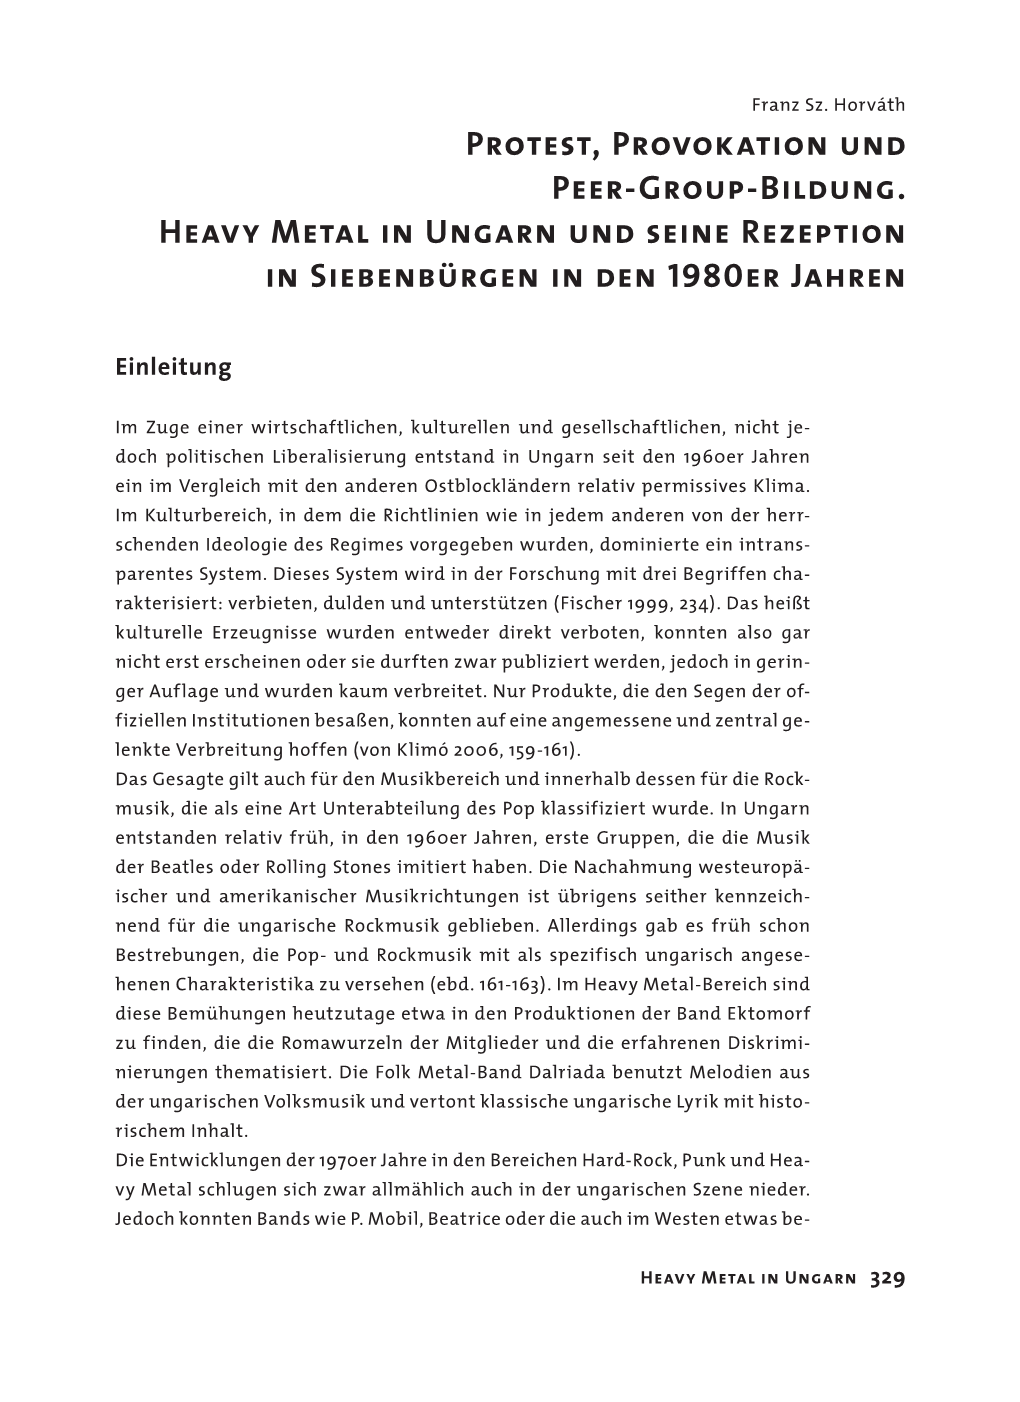 Metal Matters. Heavy Metal Als Kultur Und Welt